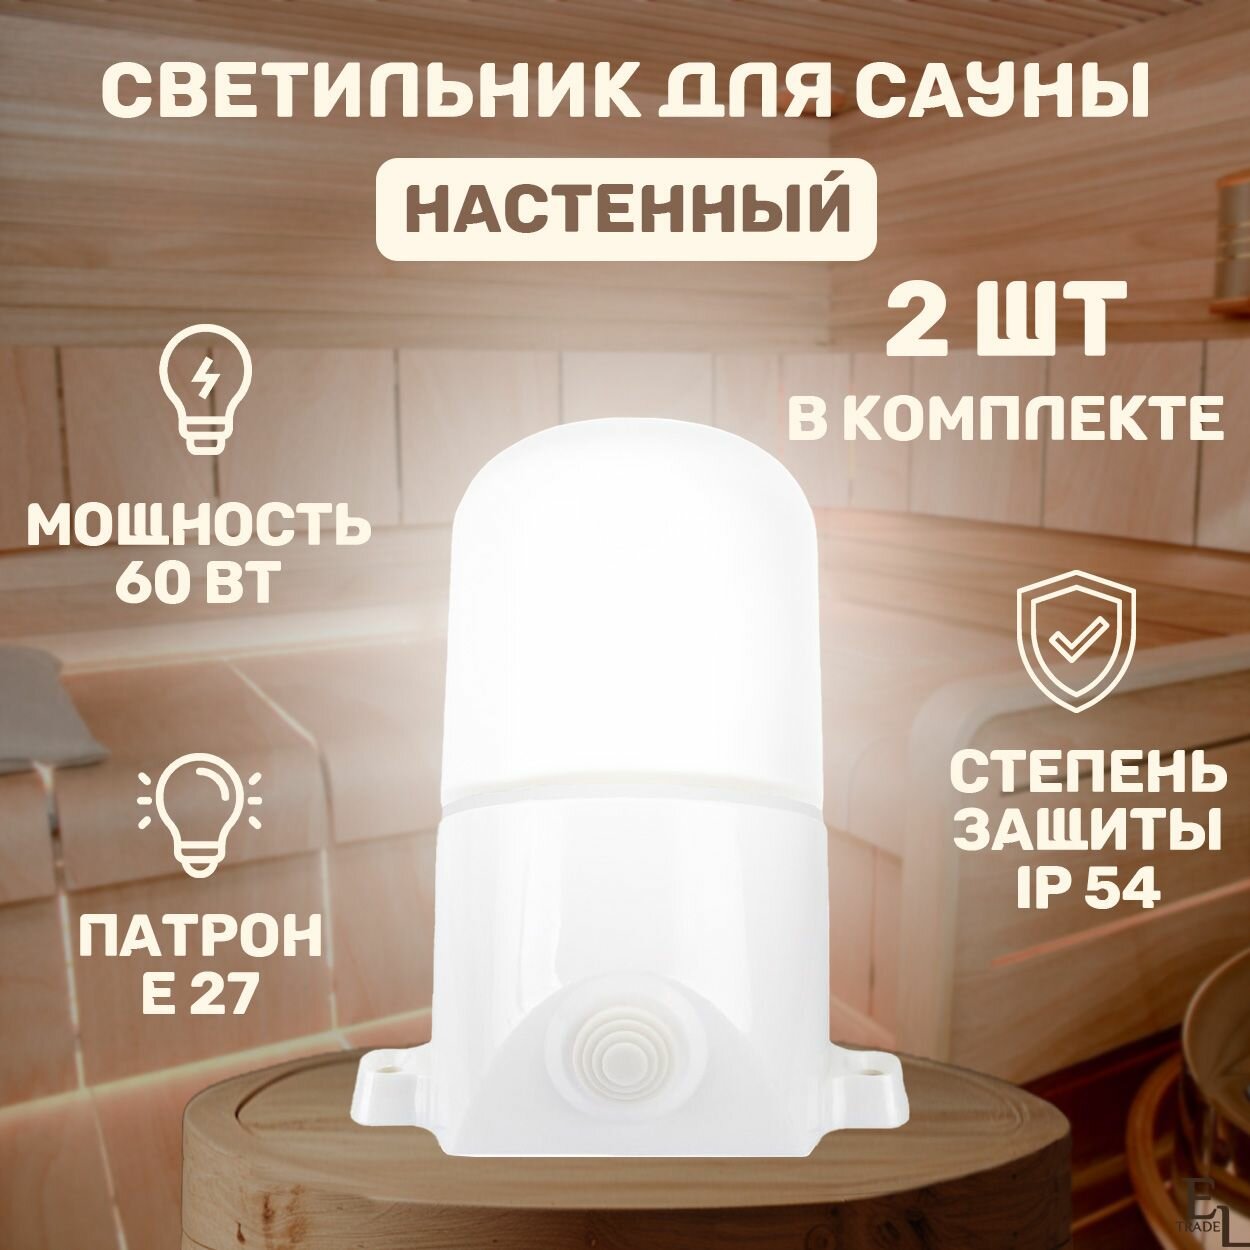 Светильник для сауны настенный поликарбонат комплект из 2 ШТ 150х110 мм E27 60 Вт IP54